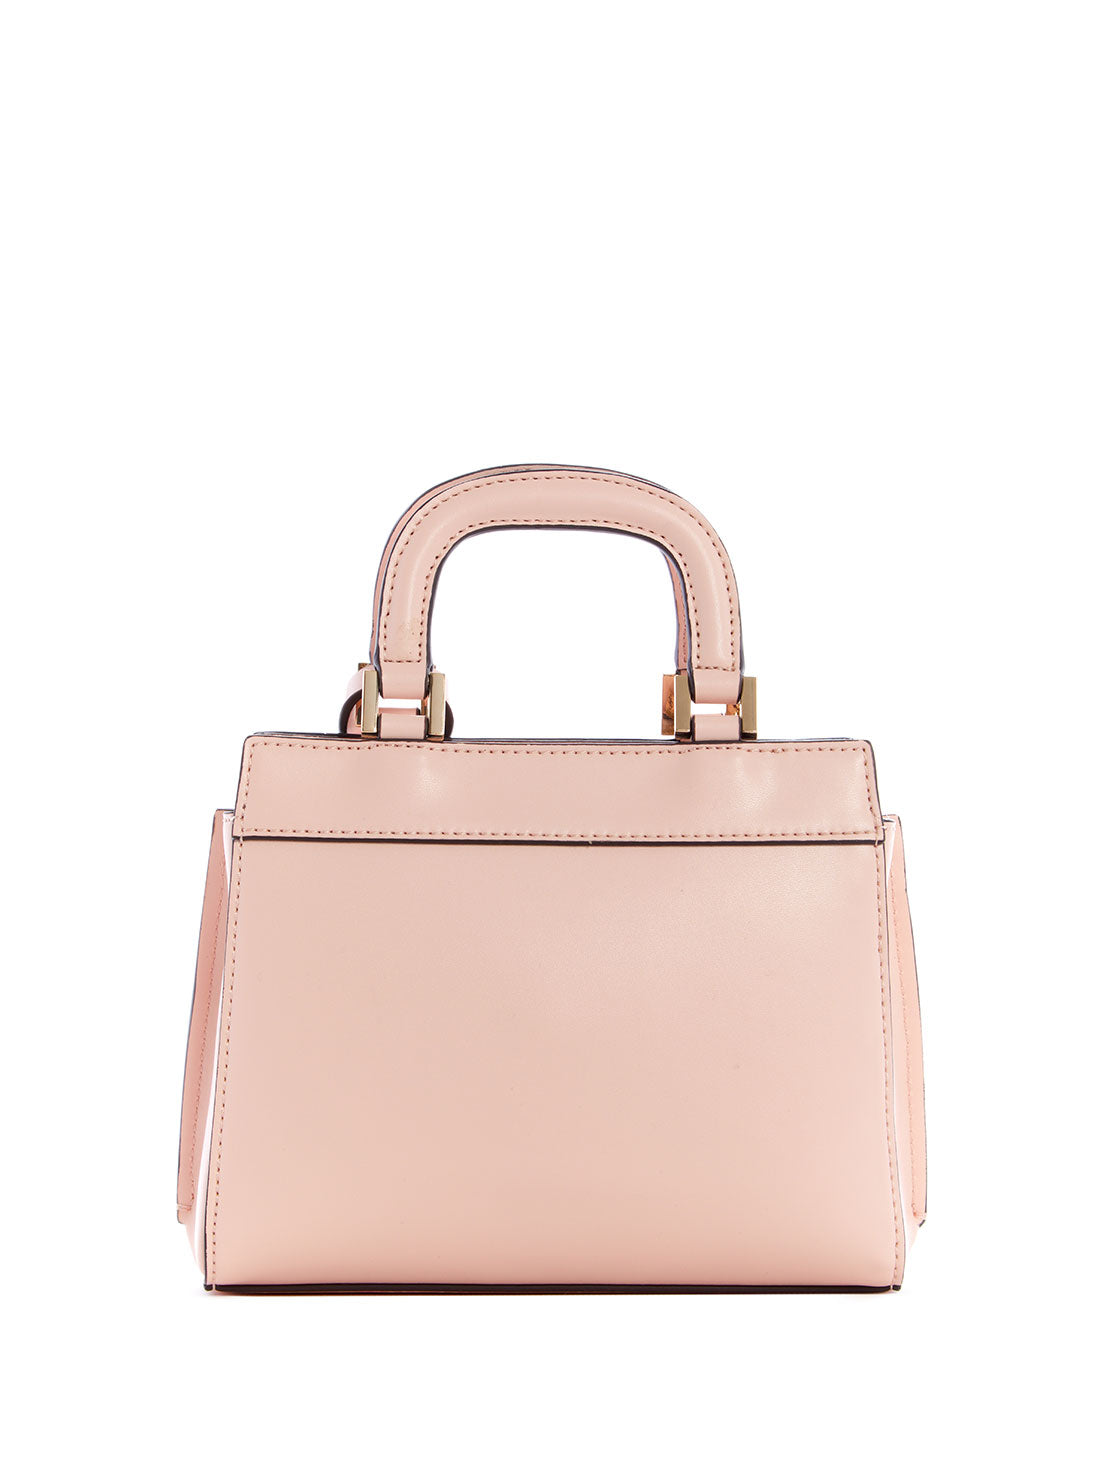 GUESS Women's Pink Katey Mini Satchel Bag QP787076 Back View